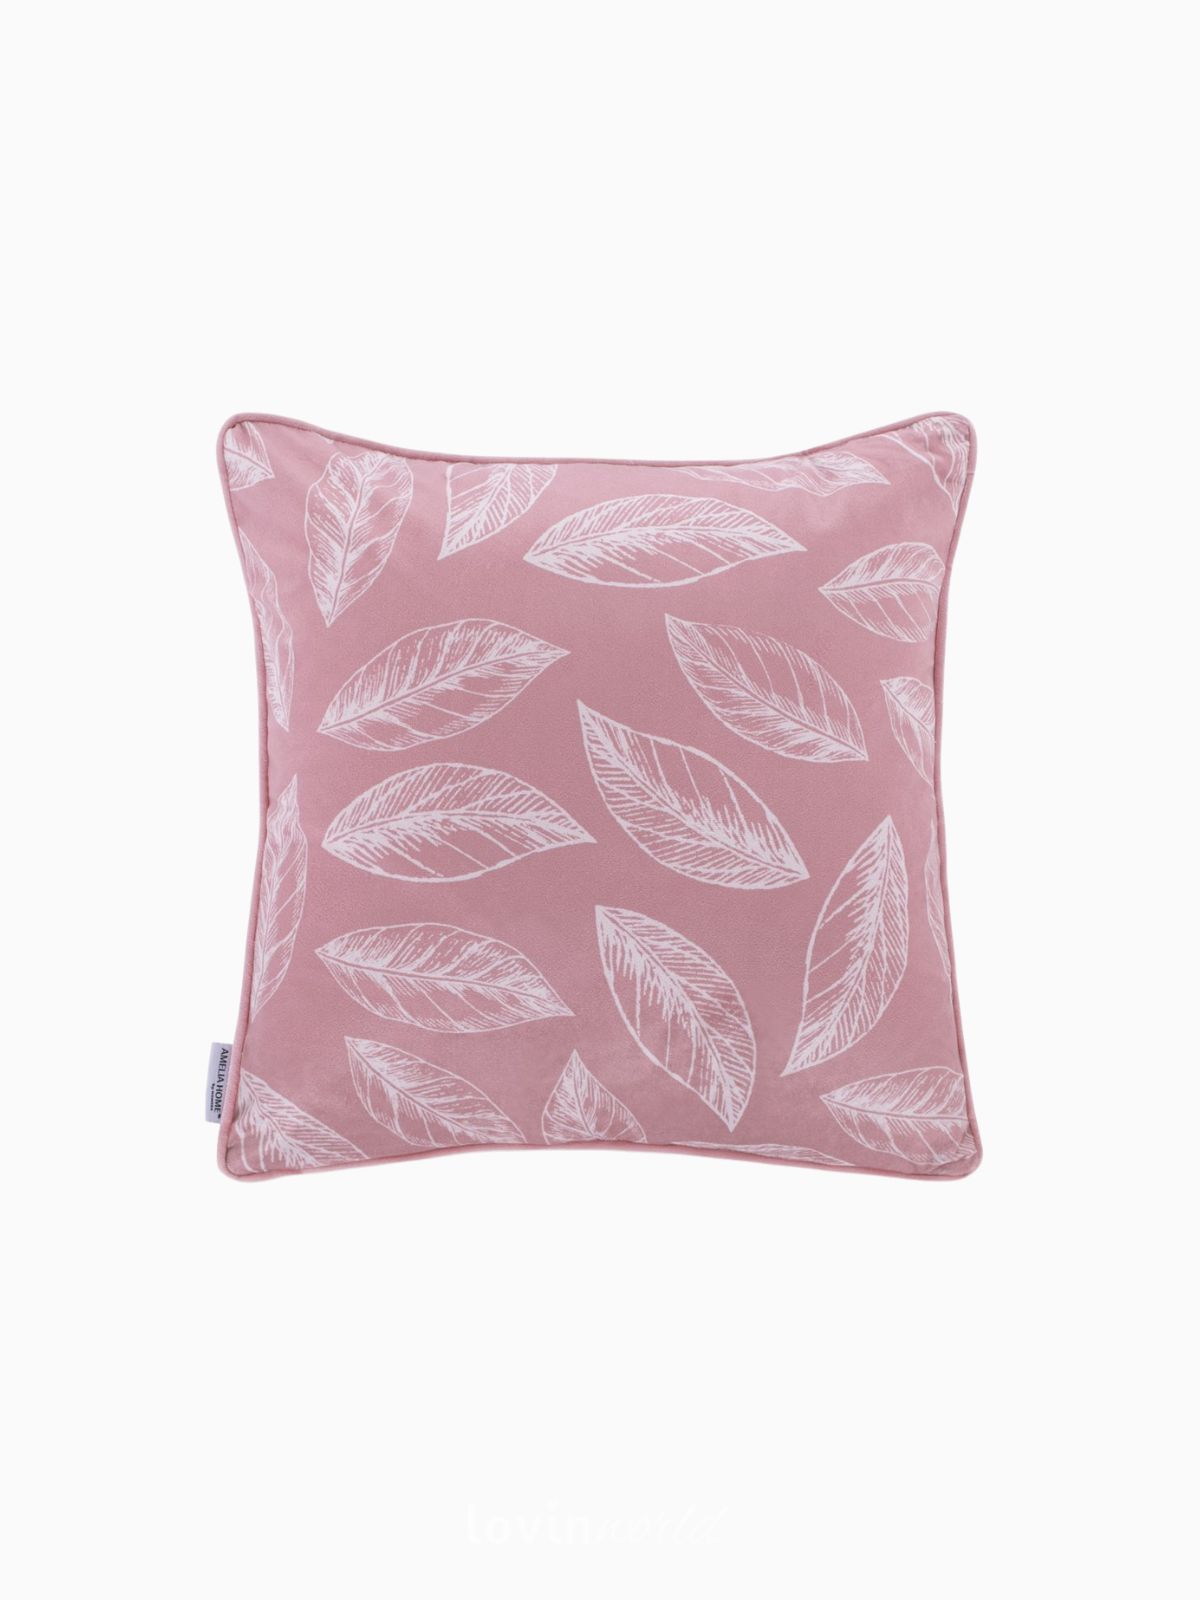 Cuscino decorativo in velluto Calm, colore rosa 45x45 cm.-1